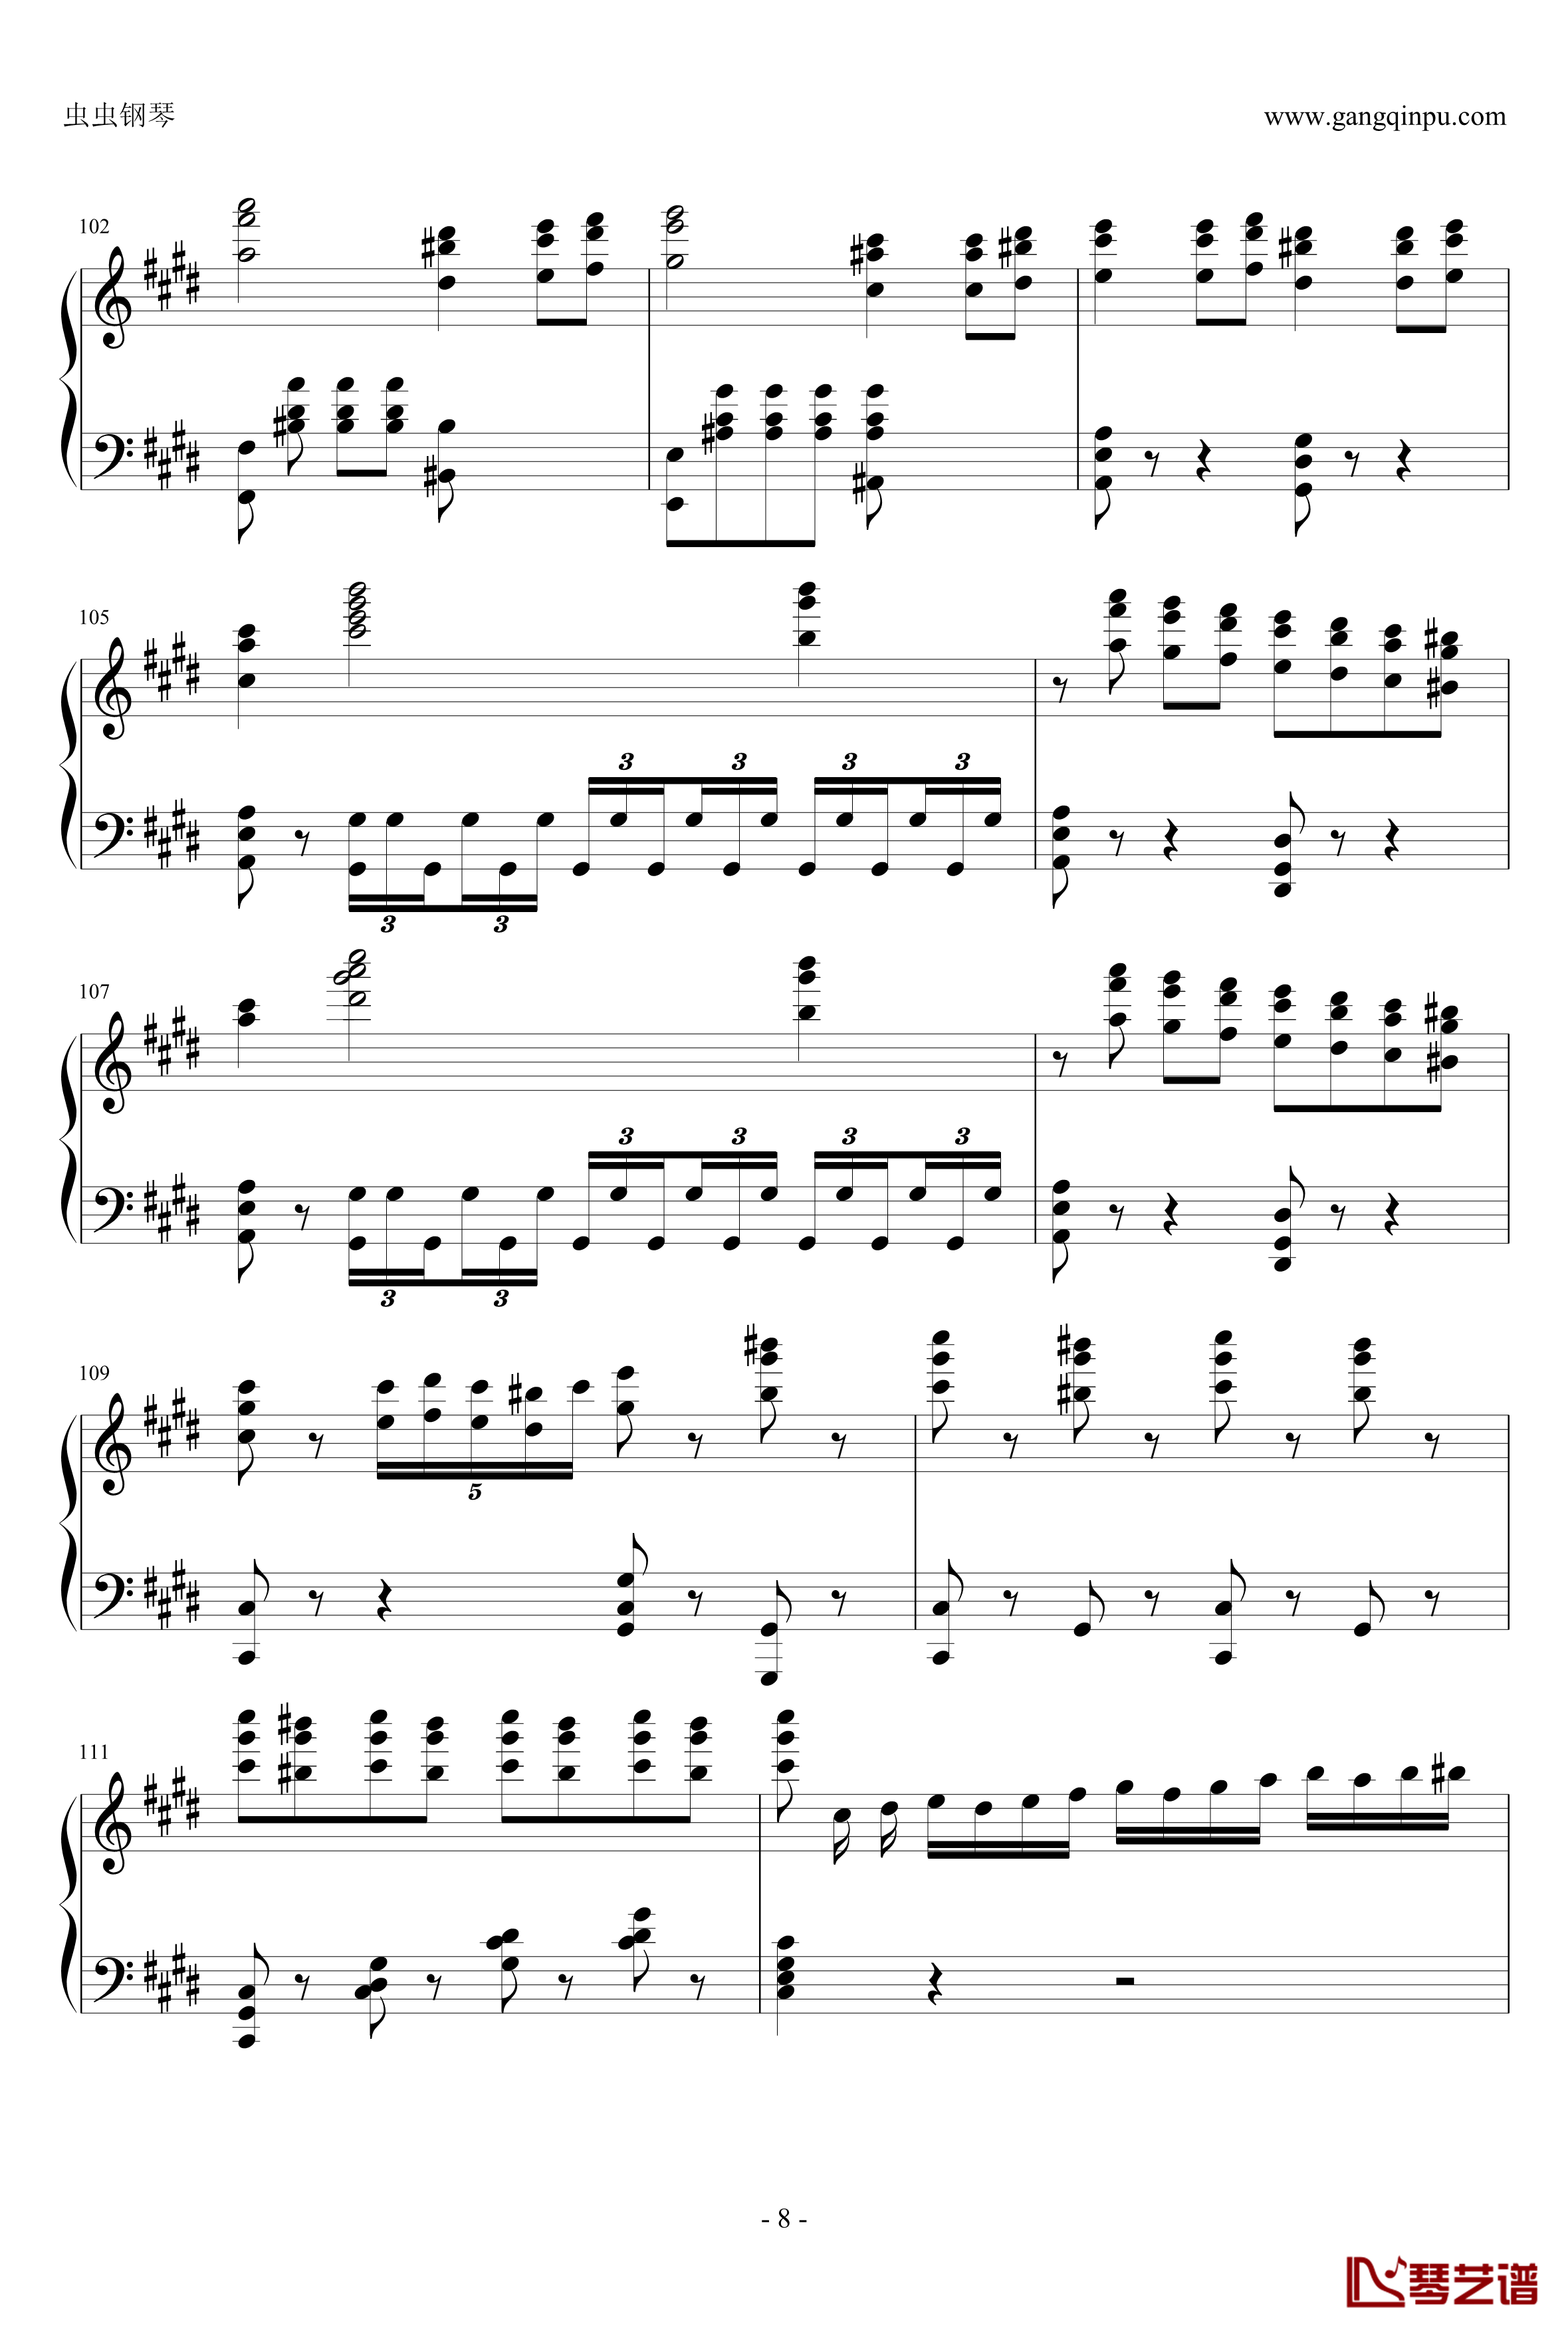 贝多芬V3奏鸣曲钢琴谱-劲舞团改编-劲舞团8